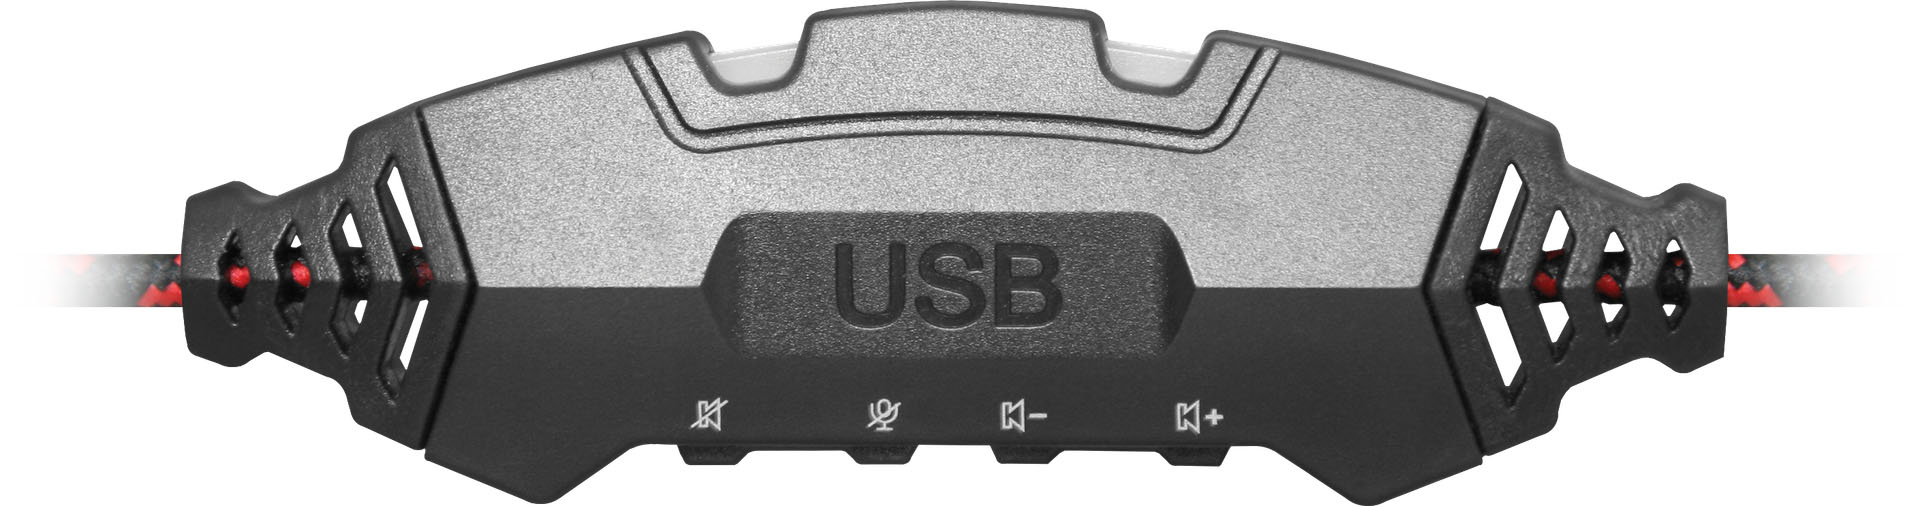 Гарнитура (наушники с микрофоном) проводная полноразмерная, Defender Warhead G-450 USB, подсветка, цвет черный